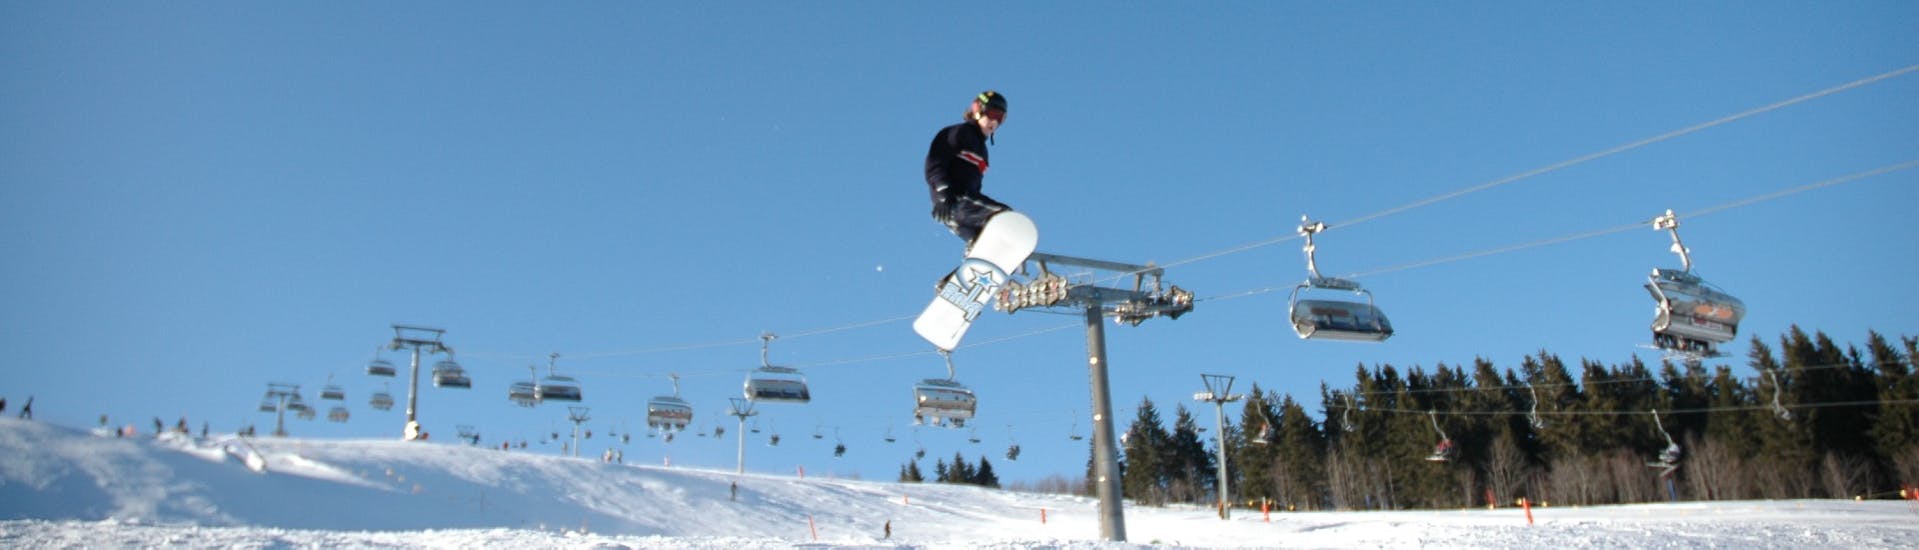 Clases de snowboard privadas a partir de 7 años para todos los niveles.